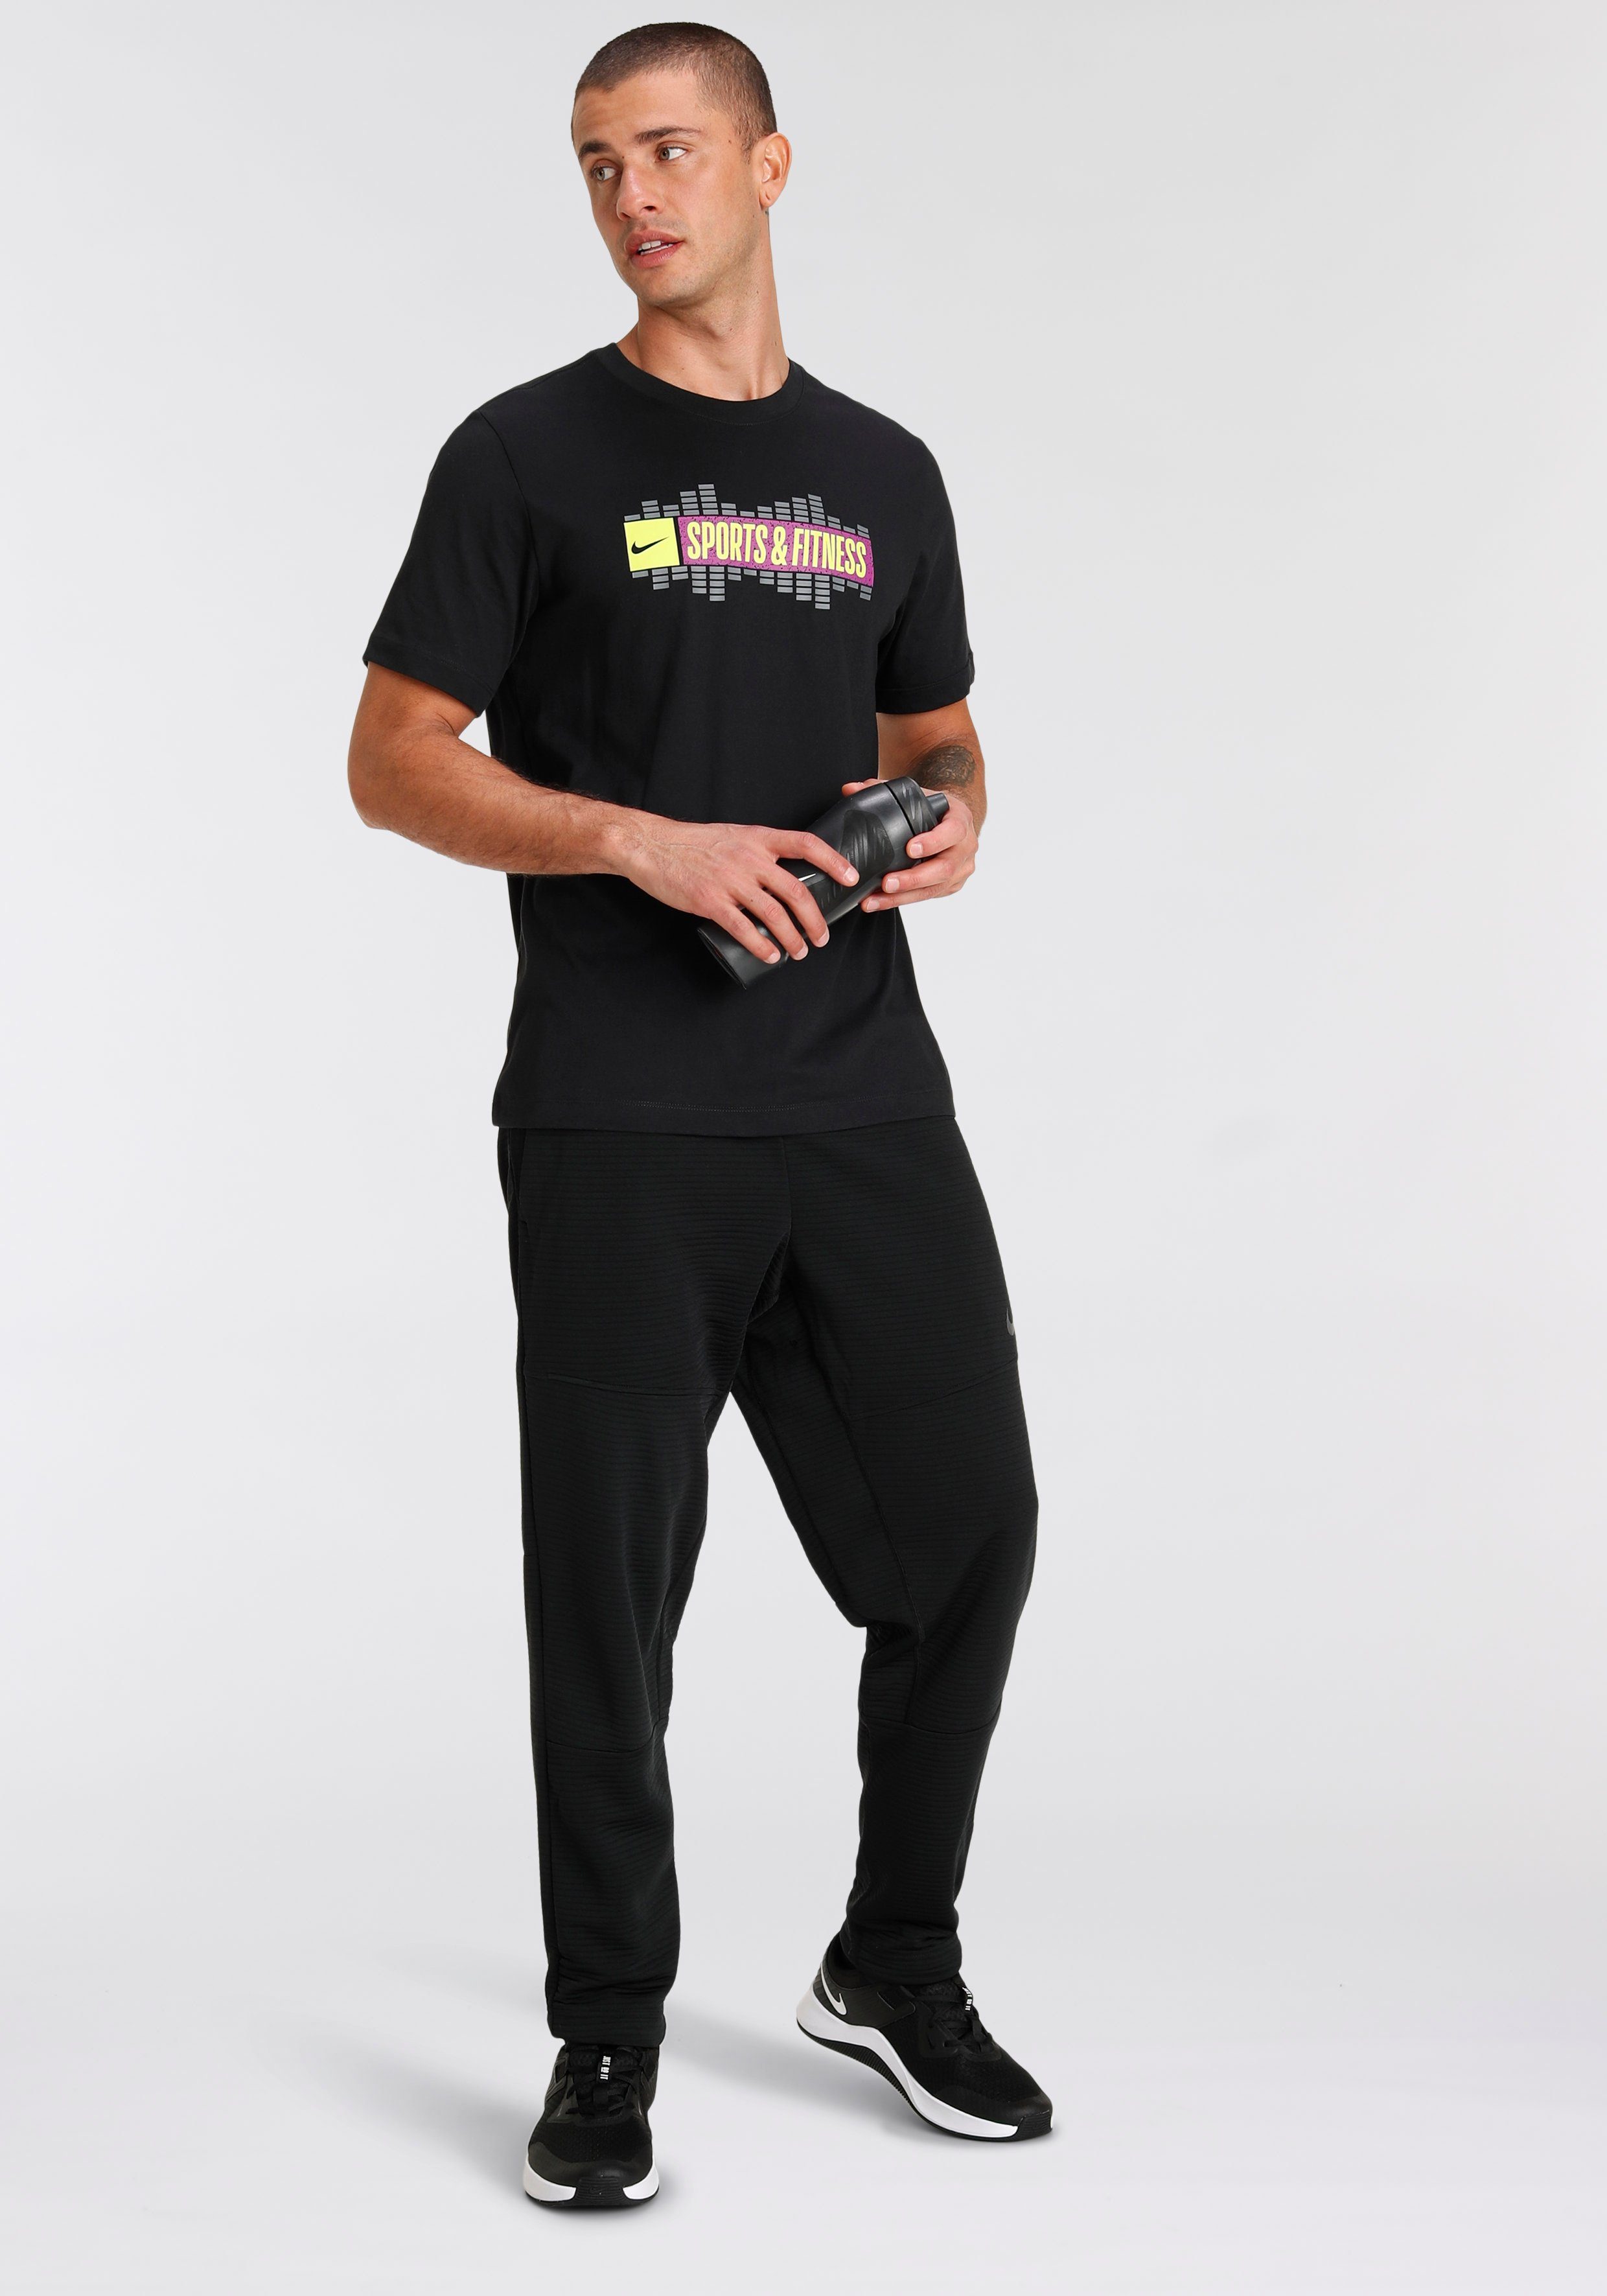 Puno Sobriquette album Nike Trainingsbroek Pro Men's Fleece Fitness Pants online verkrijgbaar |  OTTO